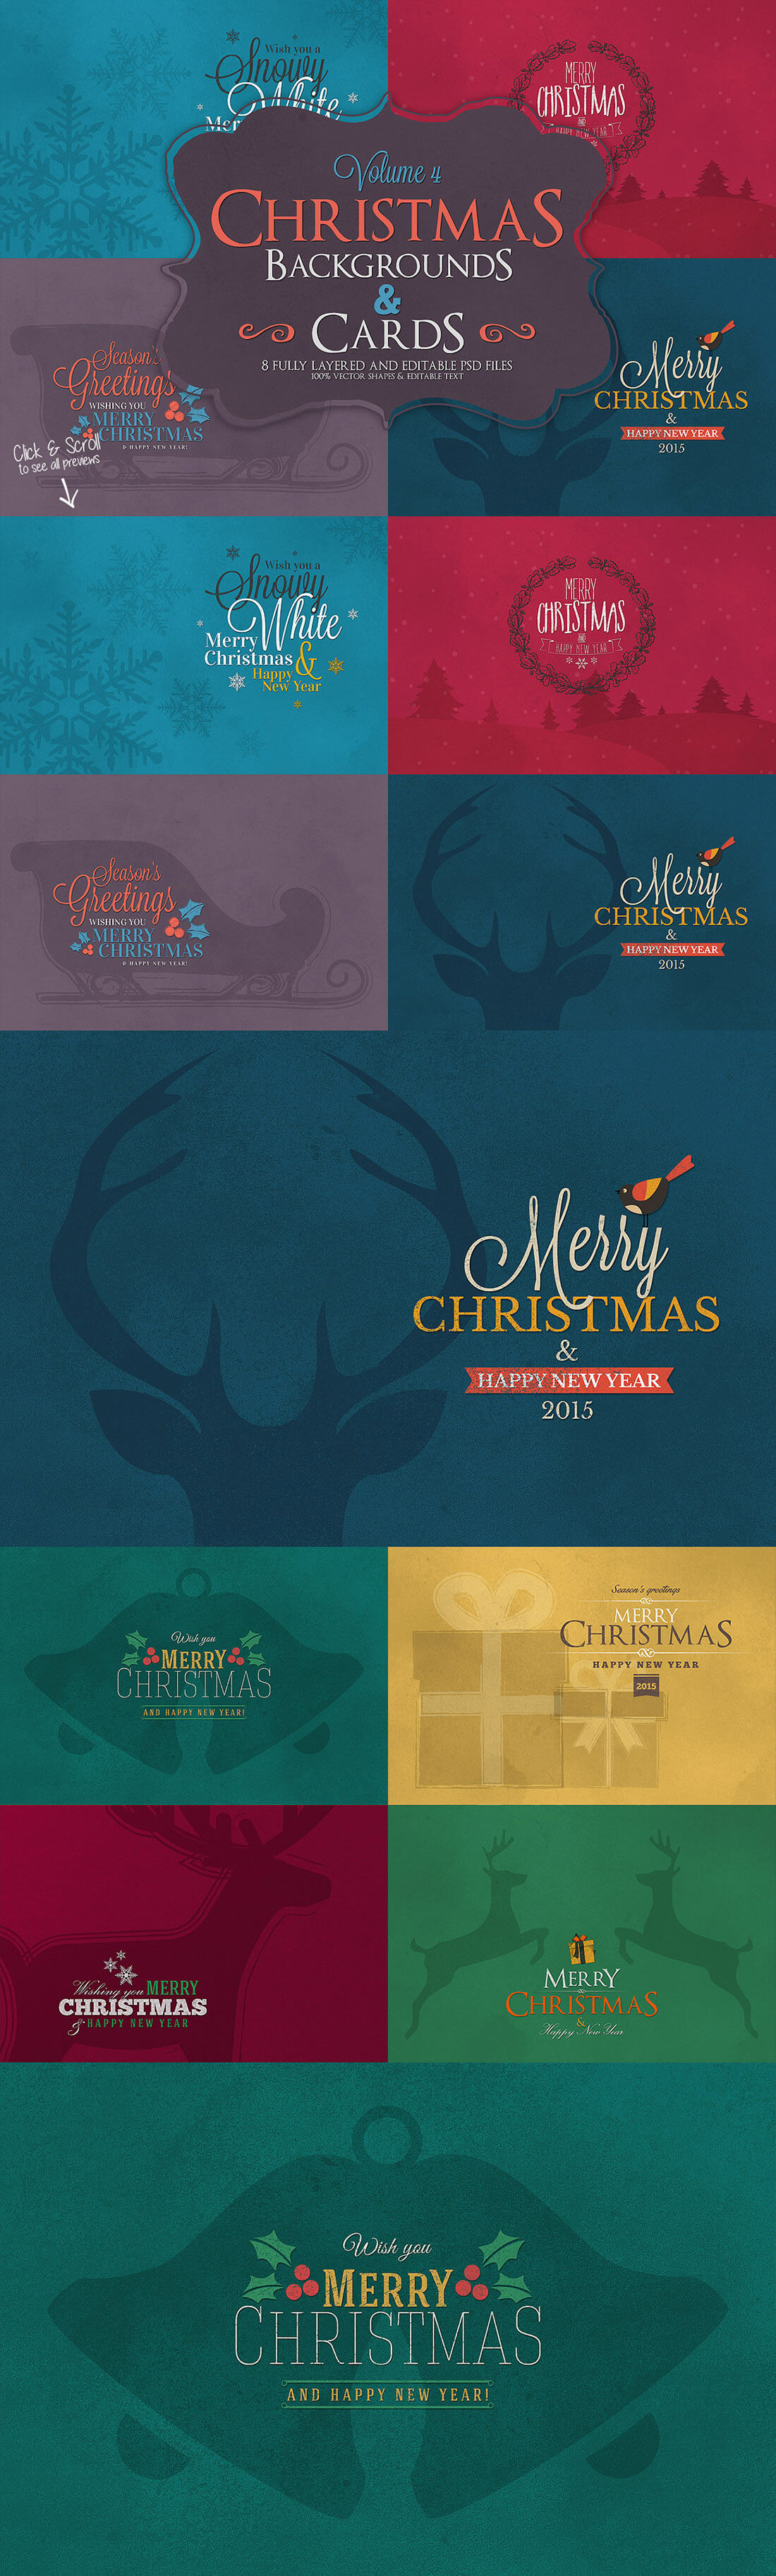 圣诞特典：400+圣诞主题设计素材包 Christmas Bundle 2016（2.35GB, AI, EPS, PSD 格式）插图7